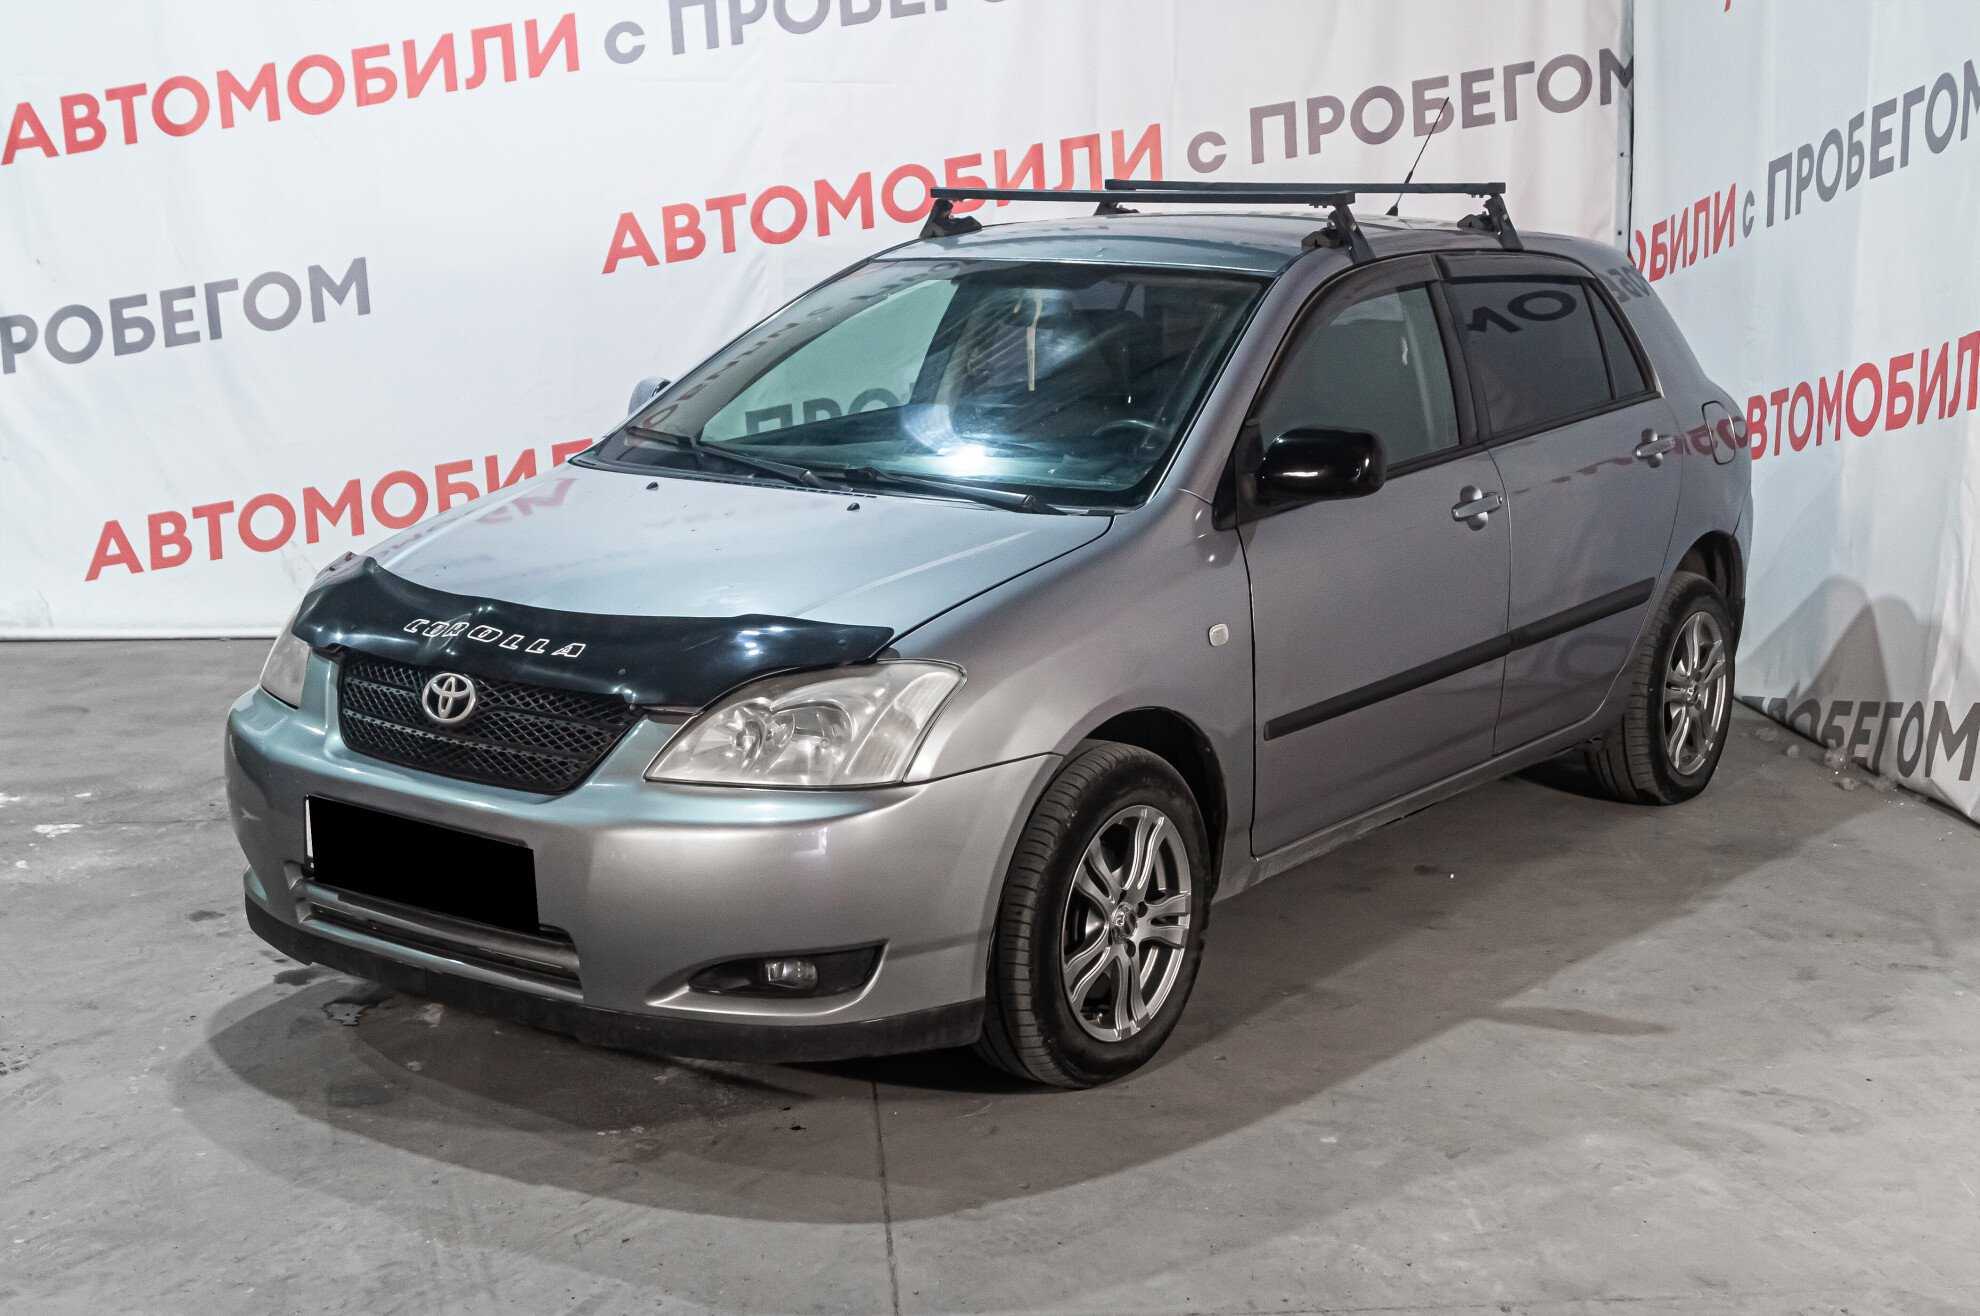 Купить авто бу в новосибирске недорого. Тойота центр Новосибирск авто с пробегом на Станционной 101.